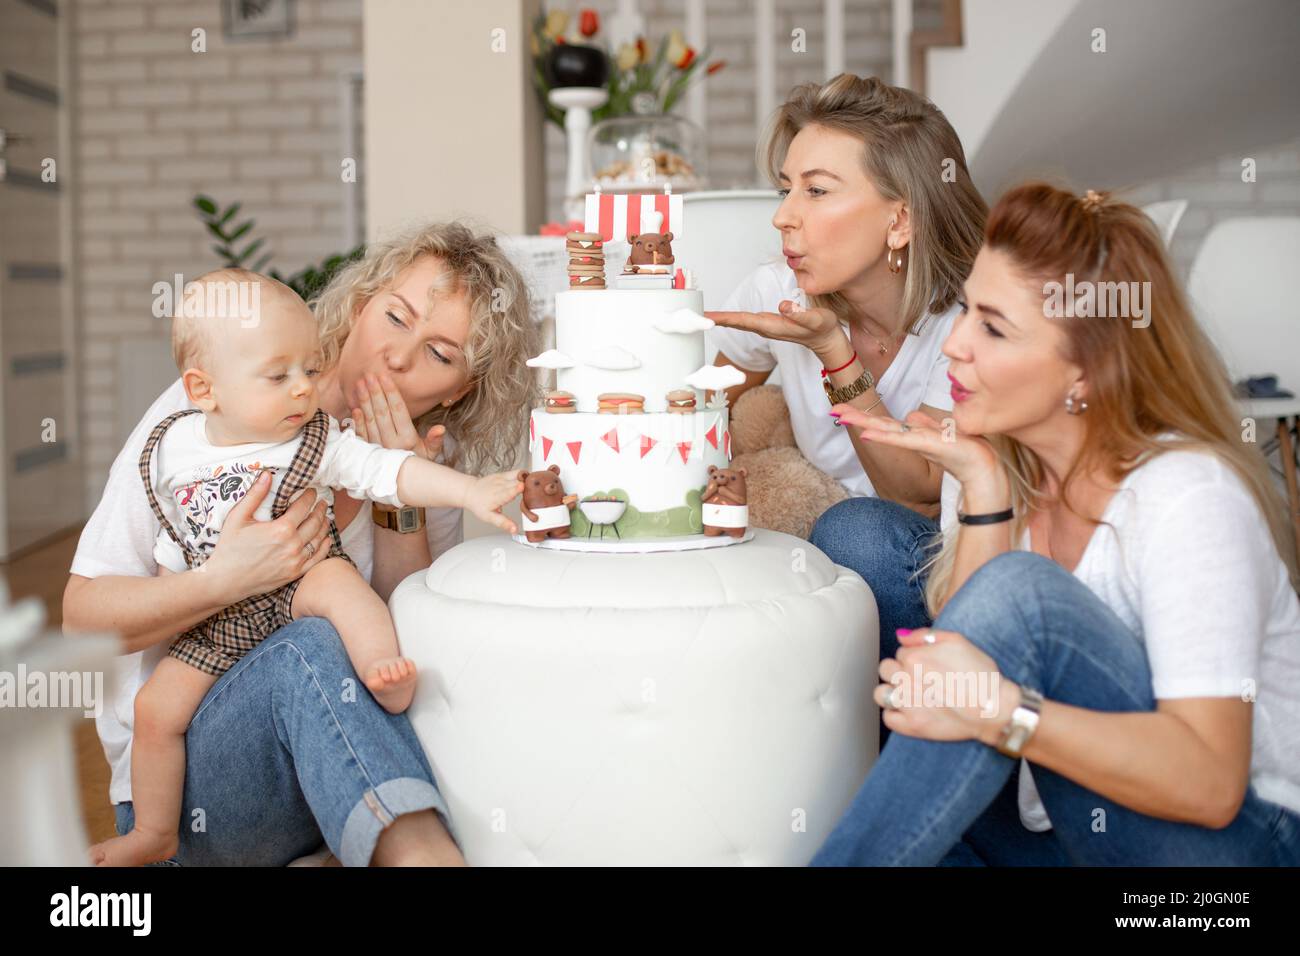 Tres atractivas mujeres de mediana edad y jóvenes que soplan besos al niño de un año tocando el oso en la tarta de cumpleaños. Foto de stock